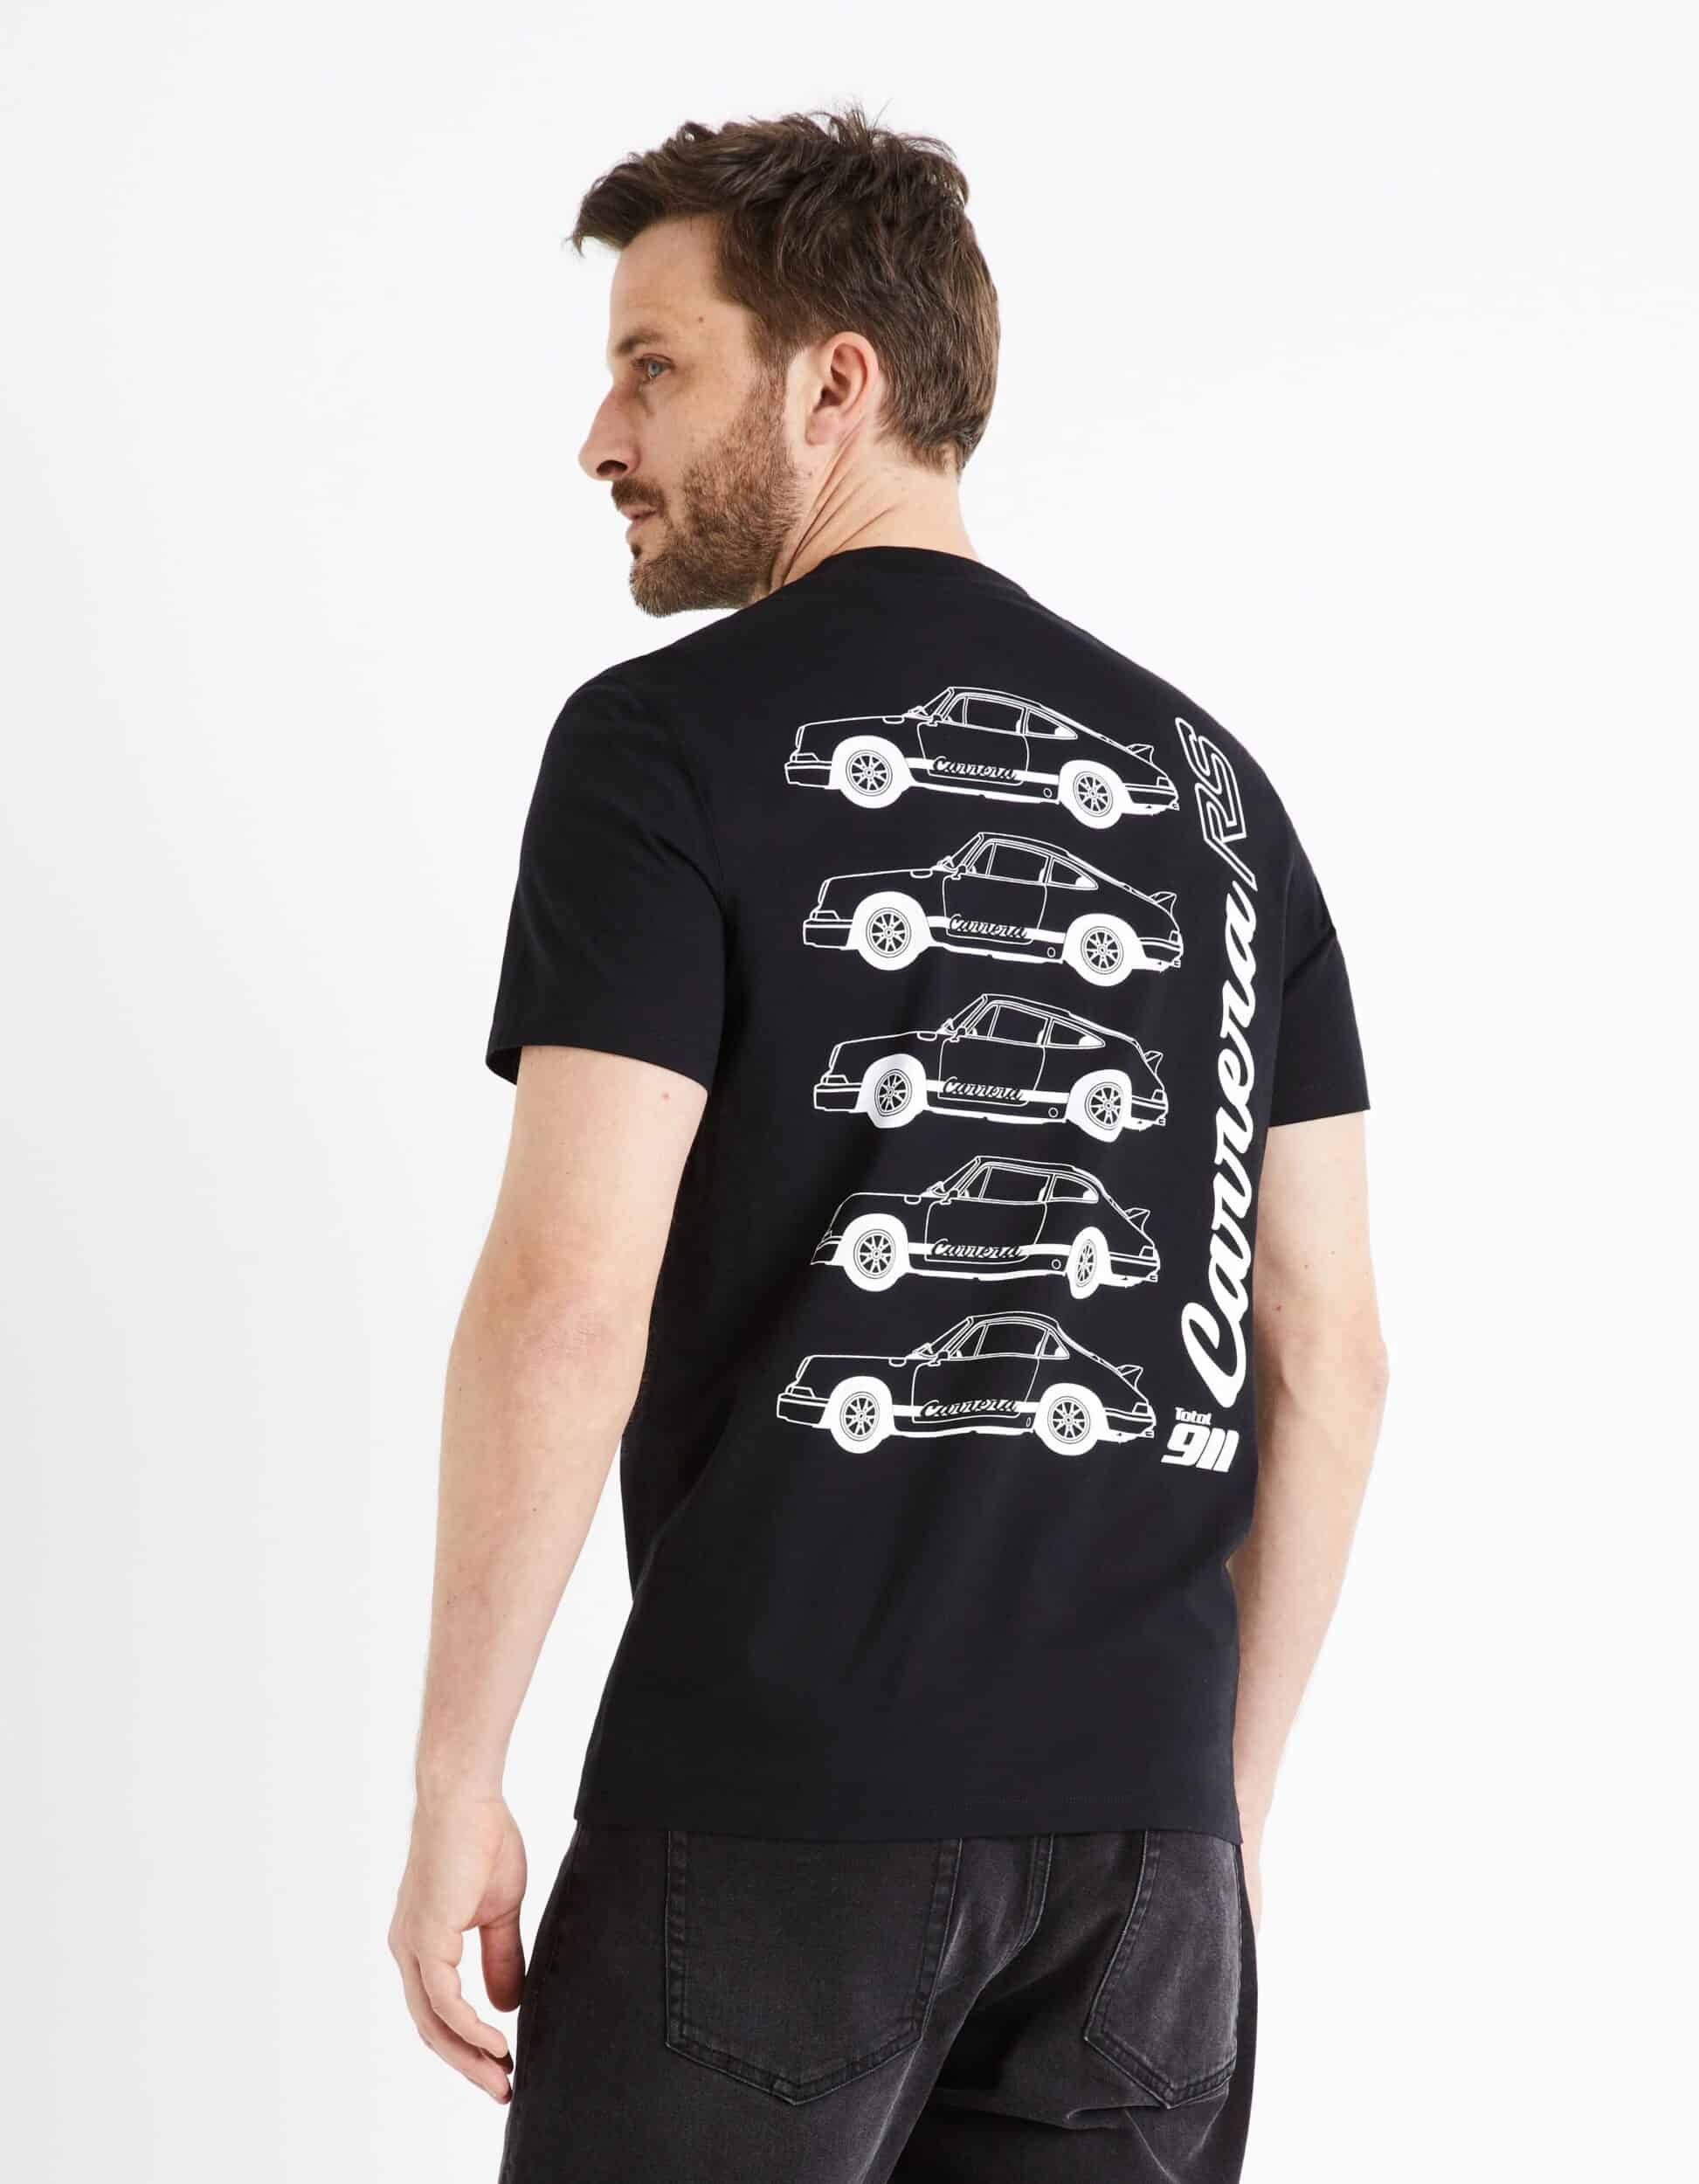 Les 10 marques de t-shirts pour homme que vous devriez connaître –